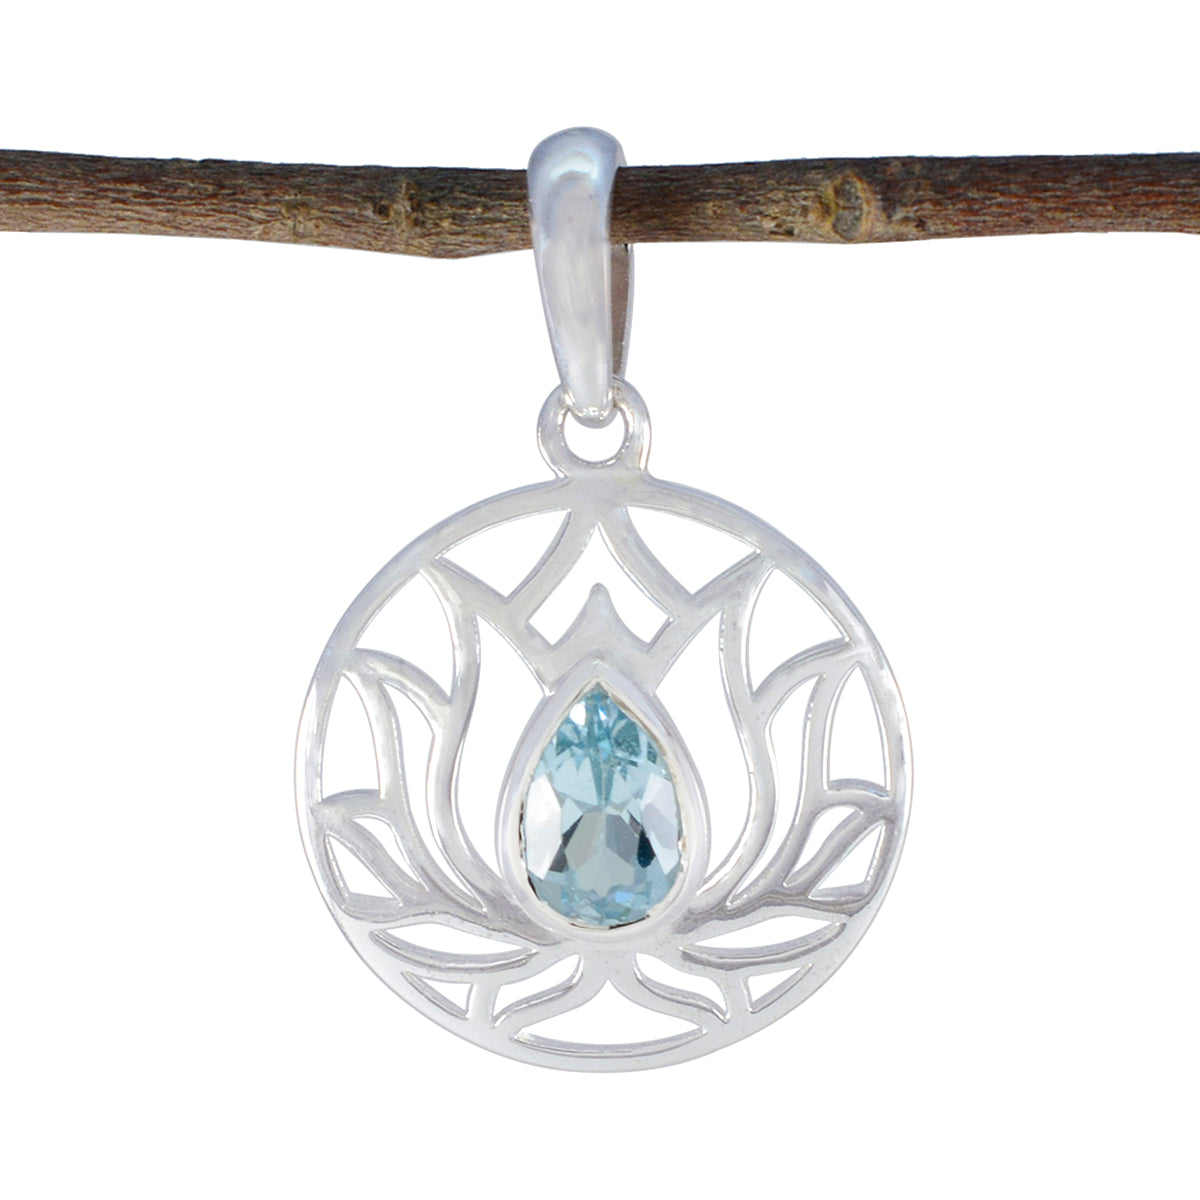 Riyo prachtige edelstenen peer gefacetteerde blauw blauwe topaas zilveren hanger cadeau voor verloving